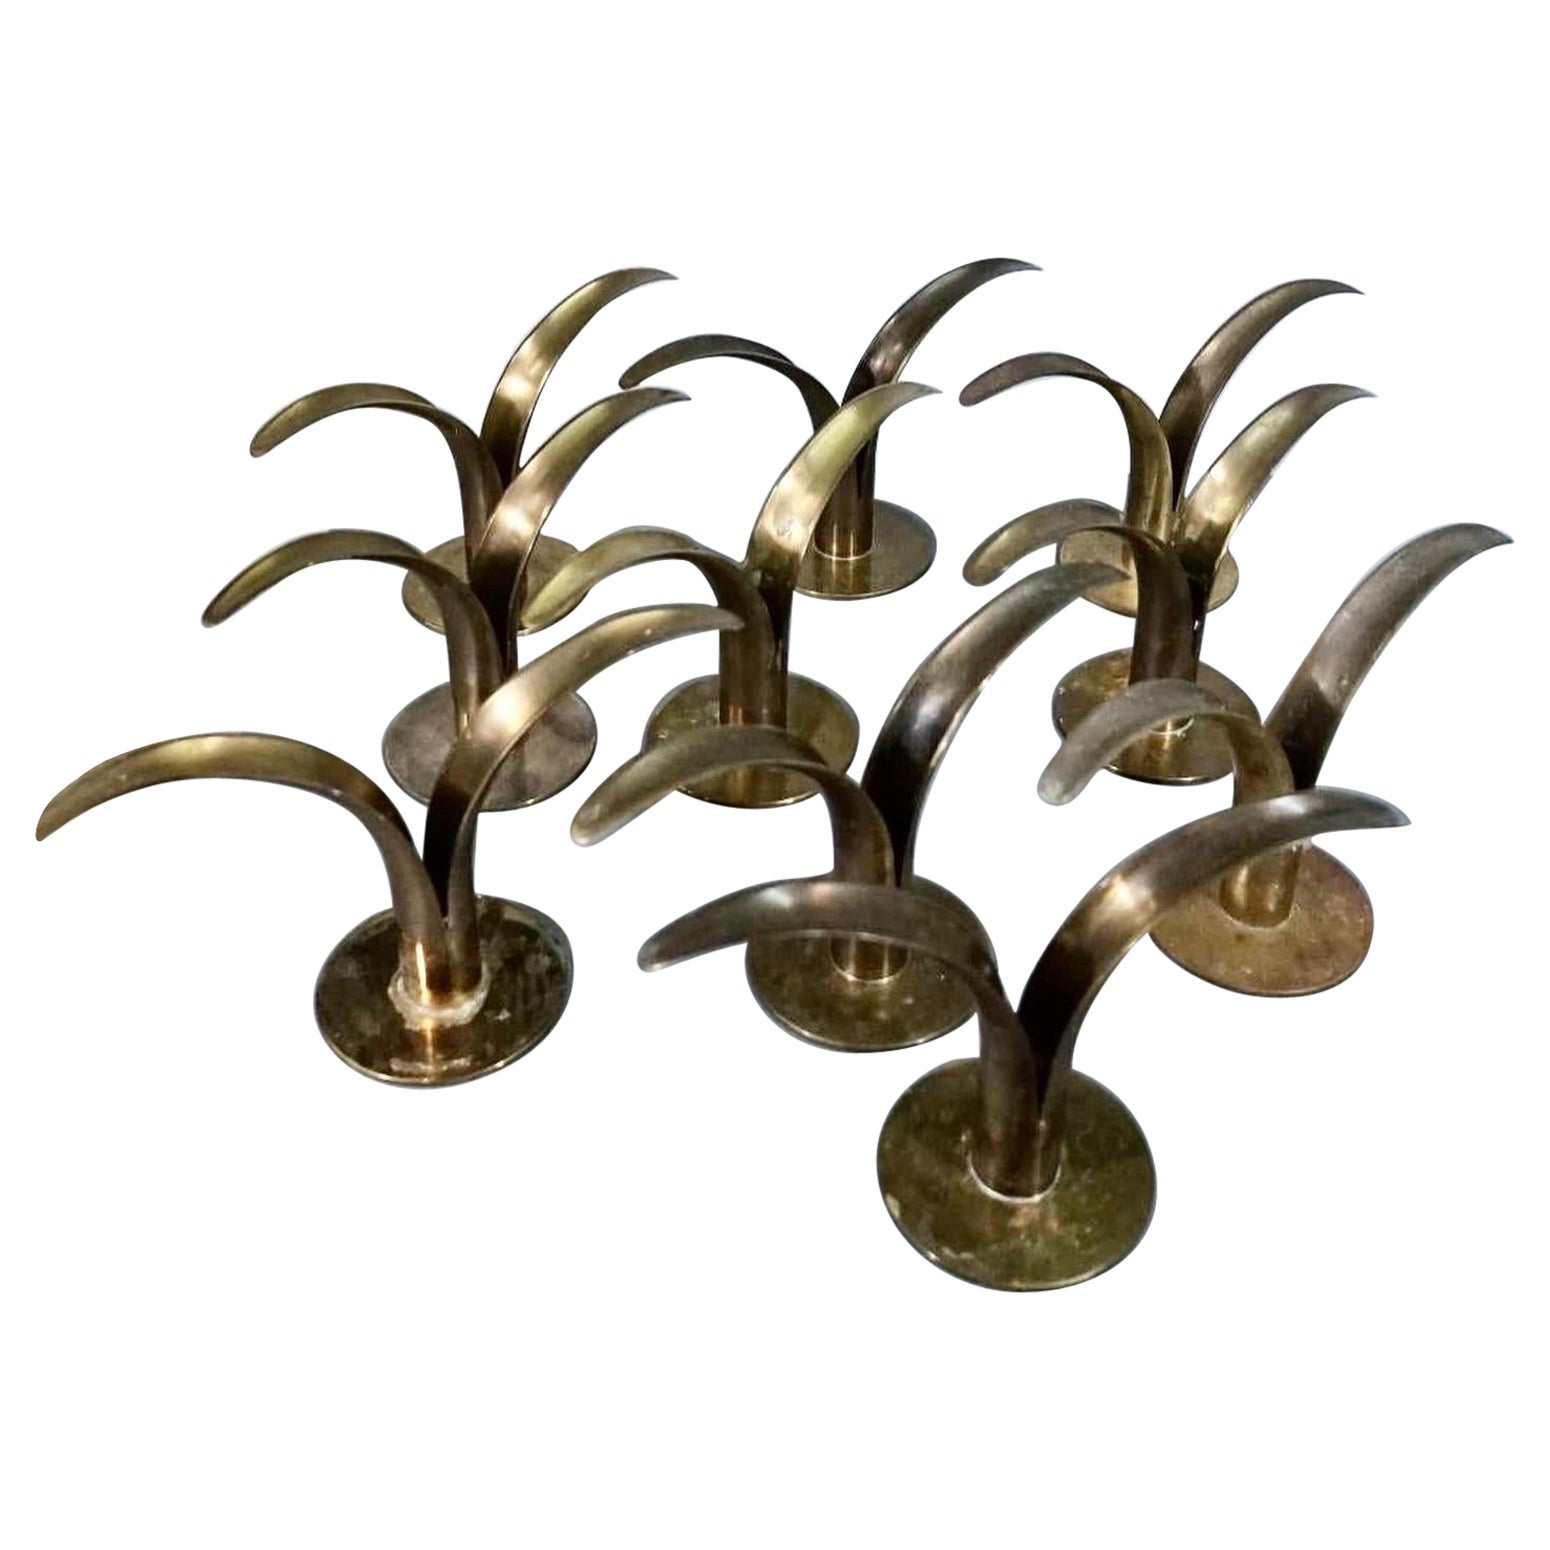 Set von 10 Lily-Kerzenhaltern, entworfen von Ivar Ålenius Björk für Ystad Metal